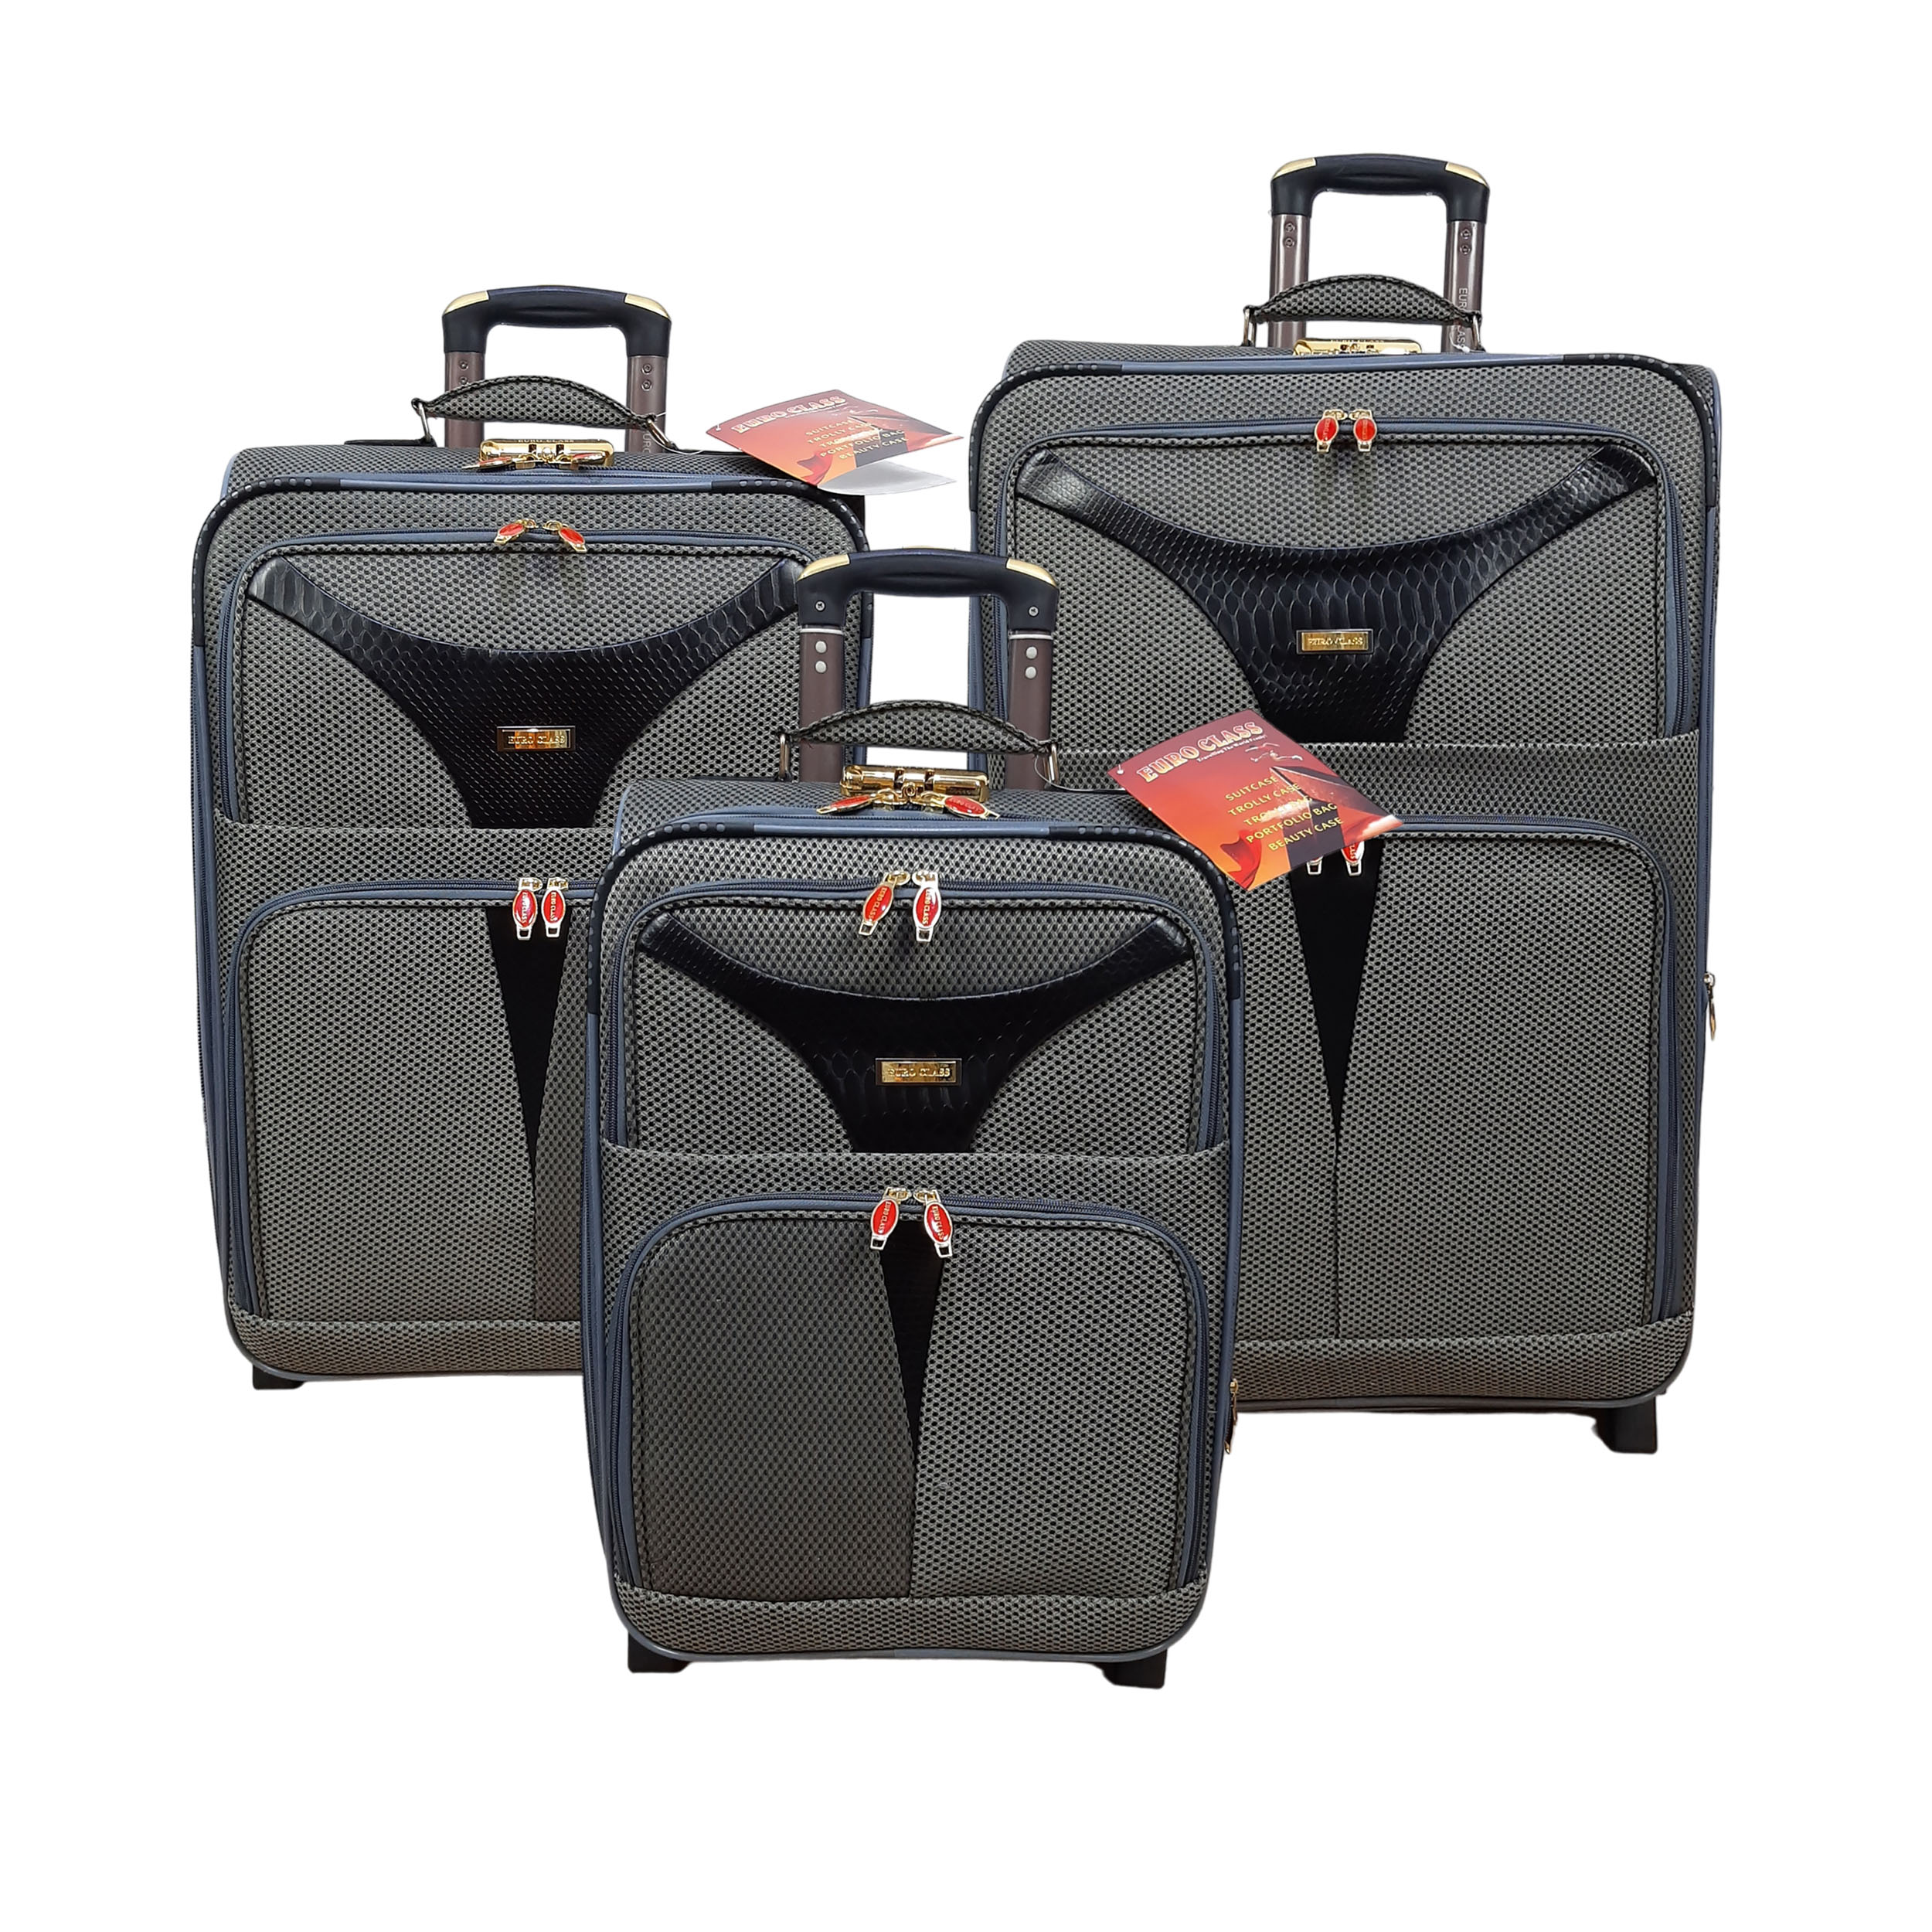 مجموعه سه عددی چمدان یورو کلاس مدل T9050